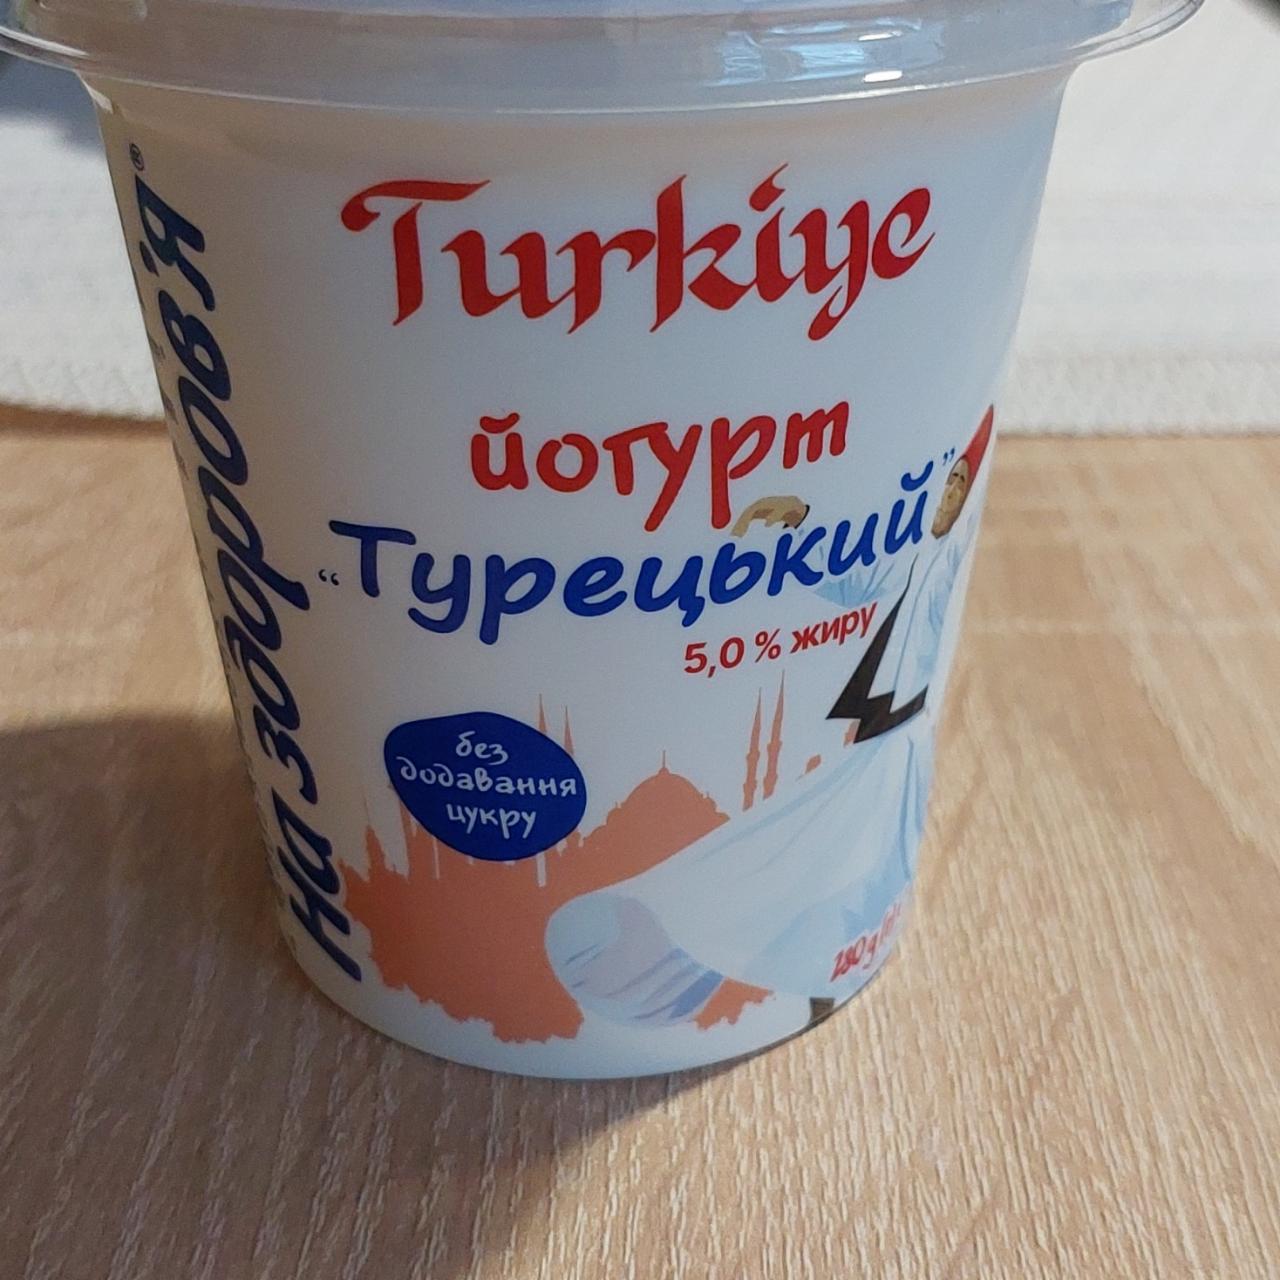 Фото - Йогурт Турецький 5.0% жиру На здоров'я